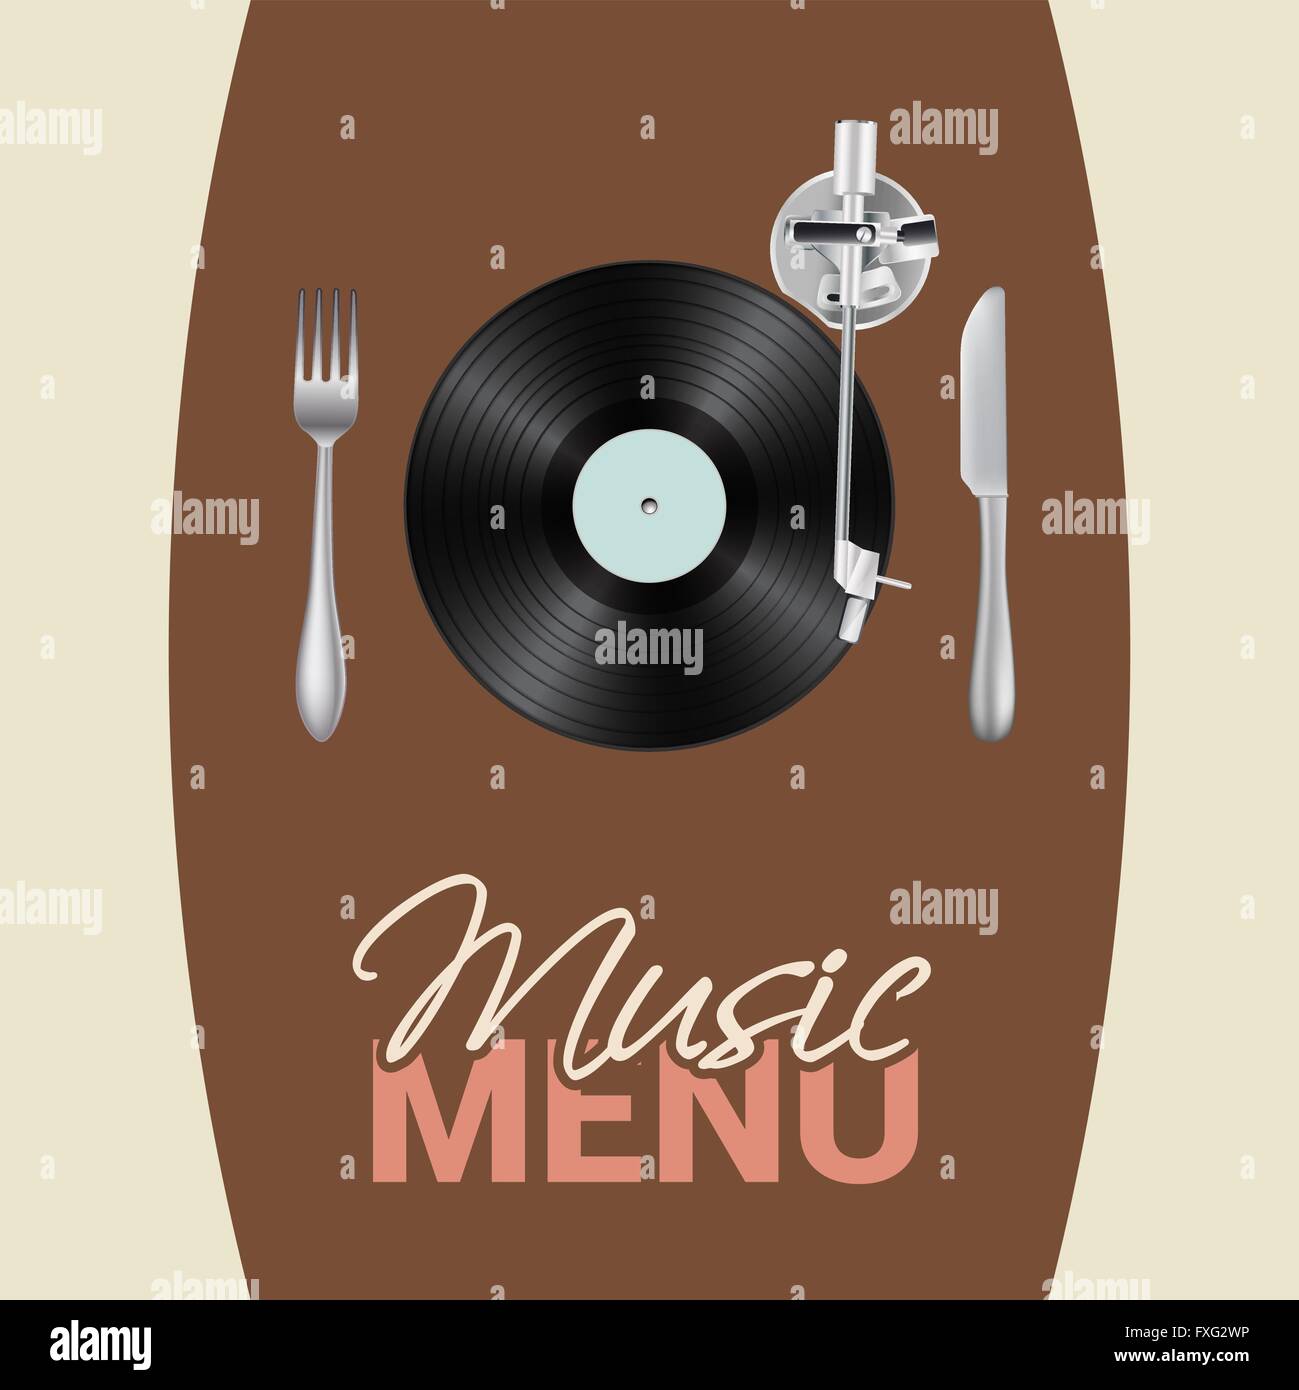 Menu Musique illustration conceptuelle avec platine vinyle, couteaux, fourchettes, texte Illustration de Vecteur